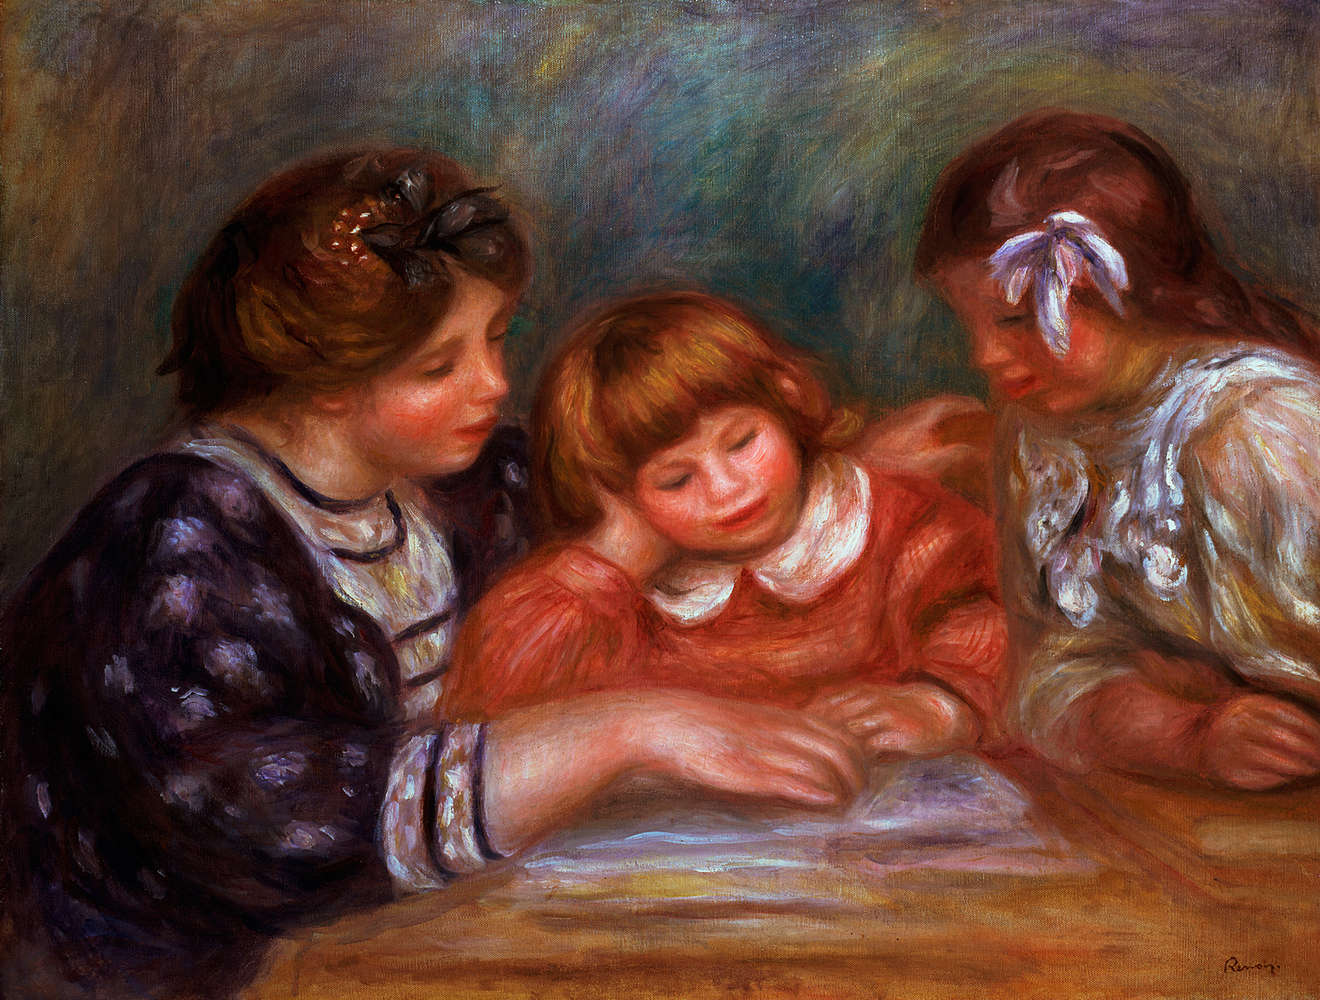             Papier peint panoramique "La Leçon" de Pierre Auguste Renoir
        